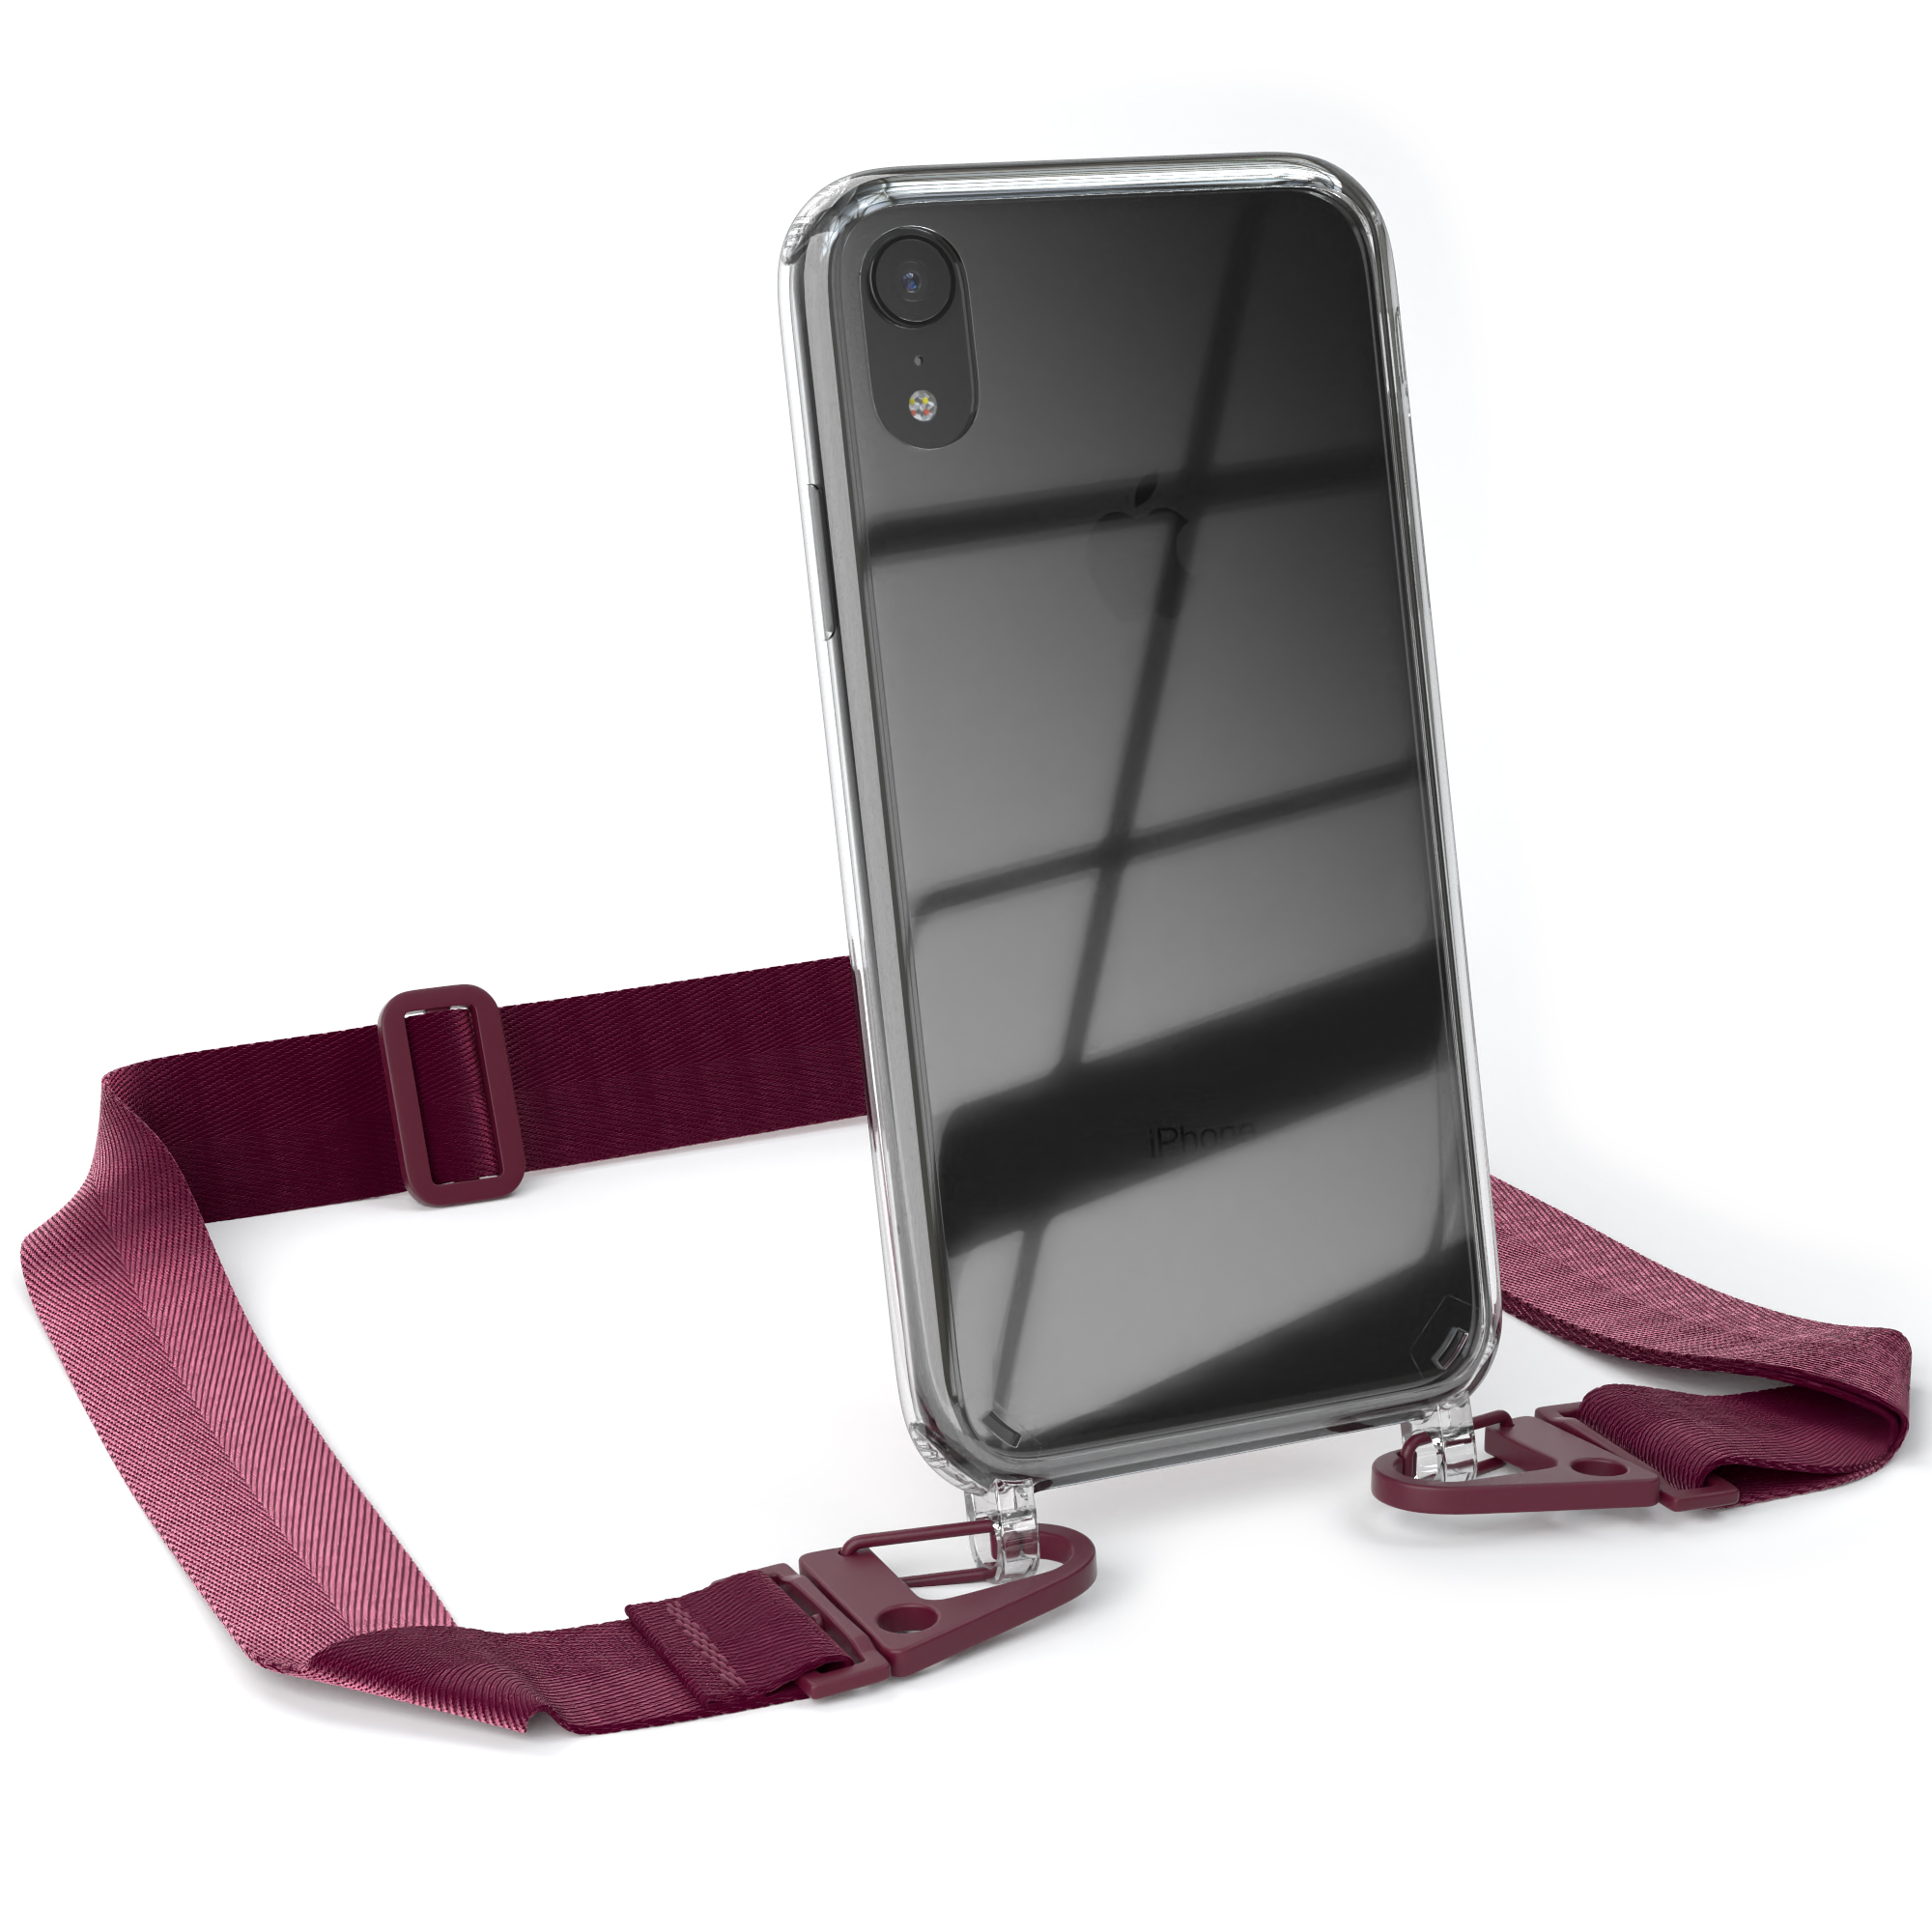 EAZY CASE Transparente Handyhülle XR, breiter Rot mit Burgundy + / Karabiner, Umhängetasche, Beere iPhone Kordel Apple